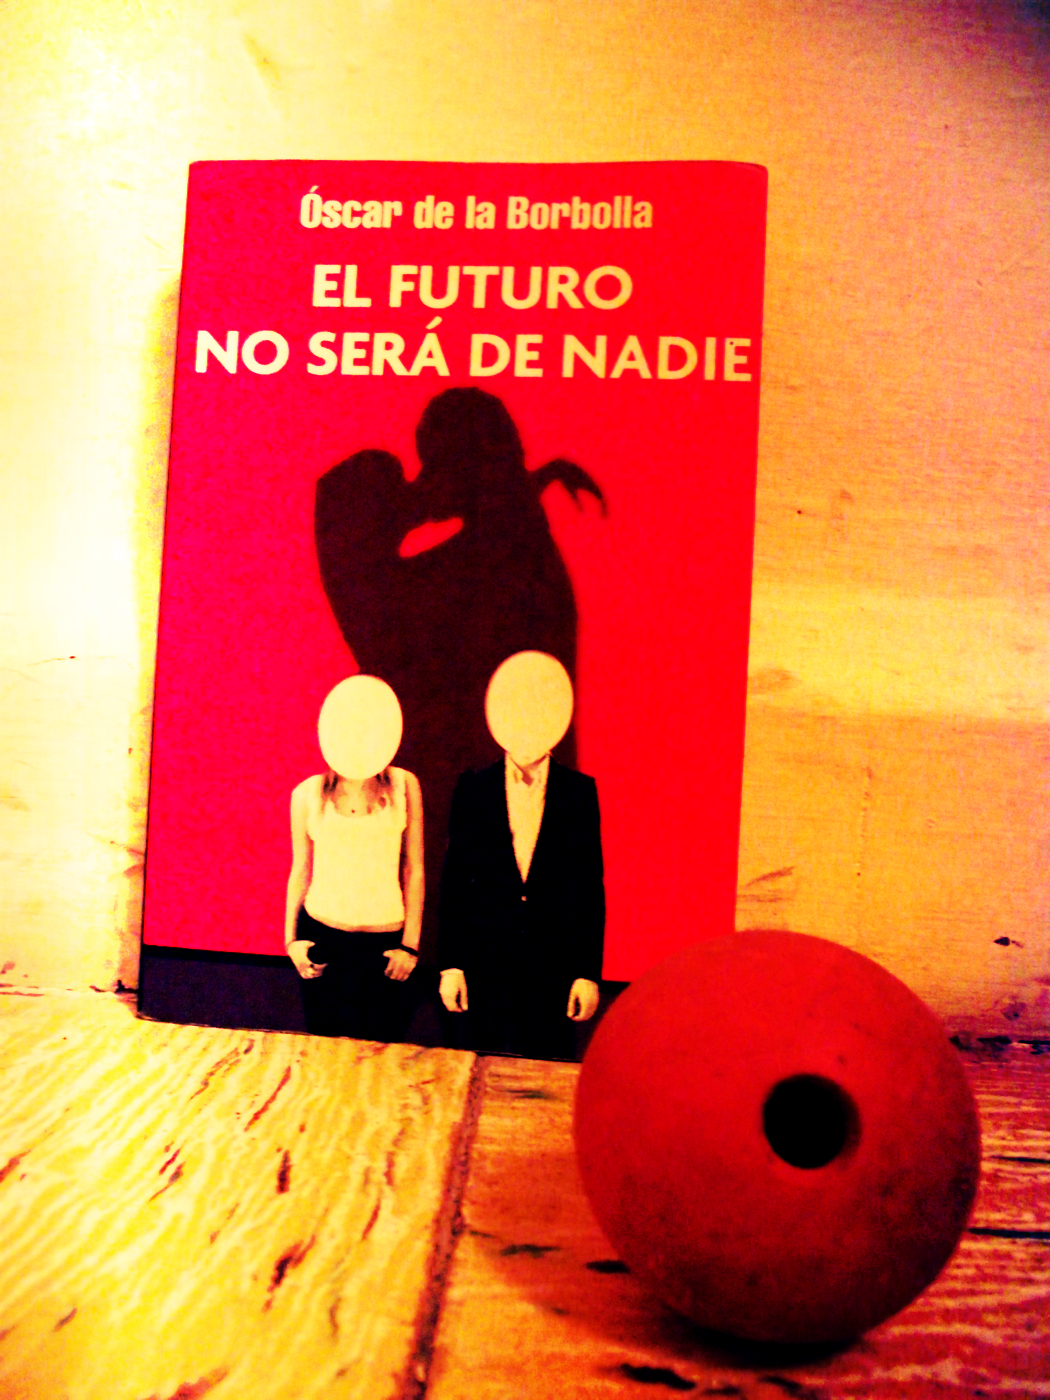 Portada de "El Futuro No Será de Nadie" de Óscar de la Borbolla, foto por Óscar Alarcón para Neotraba